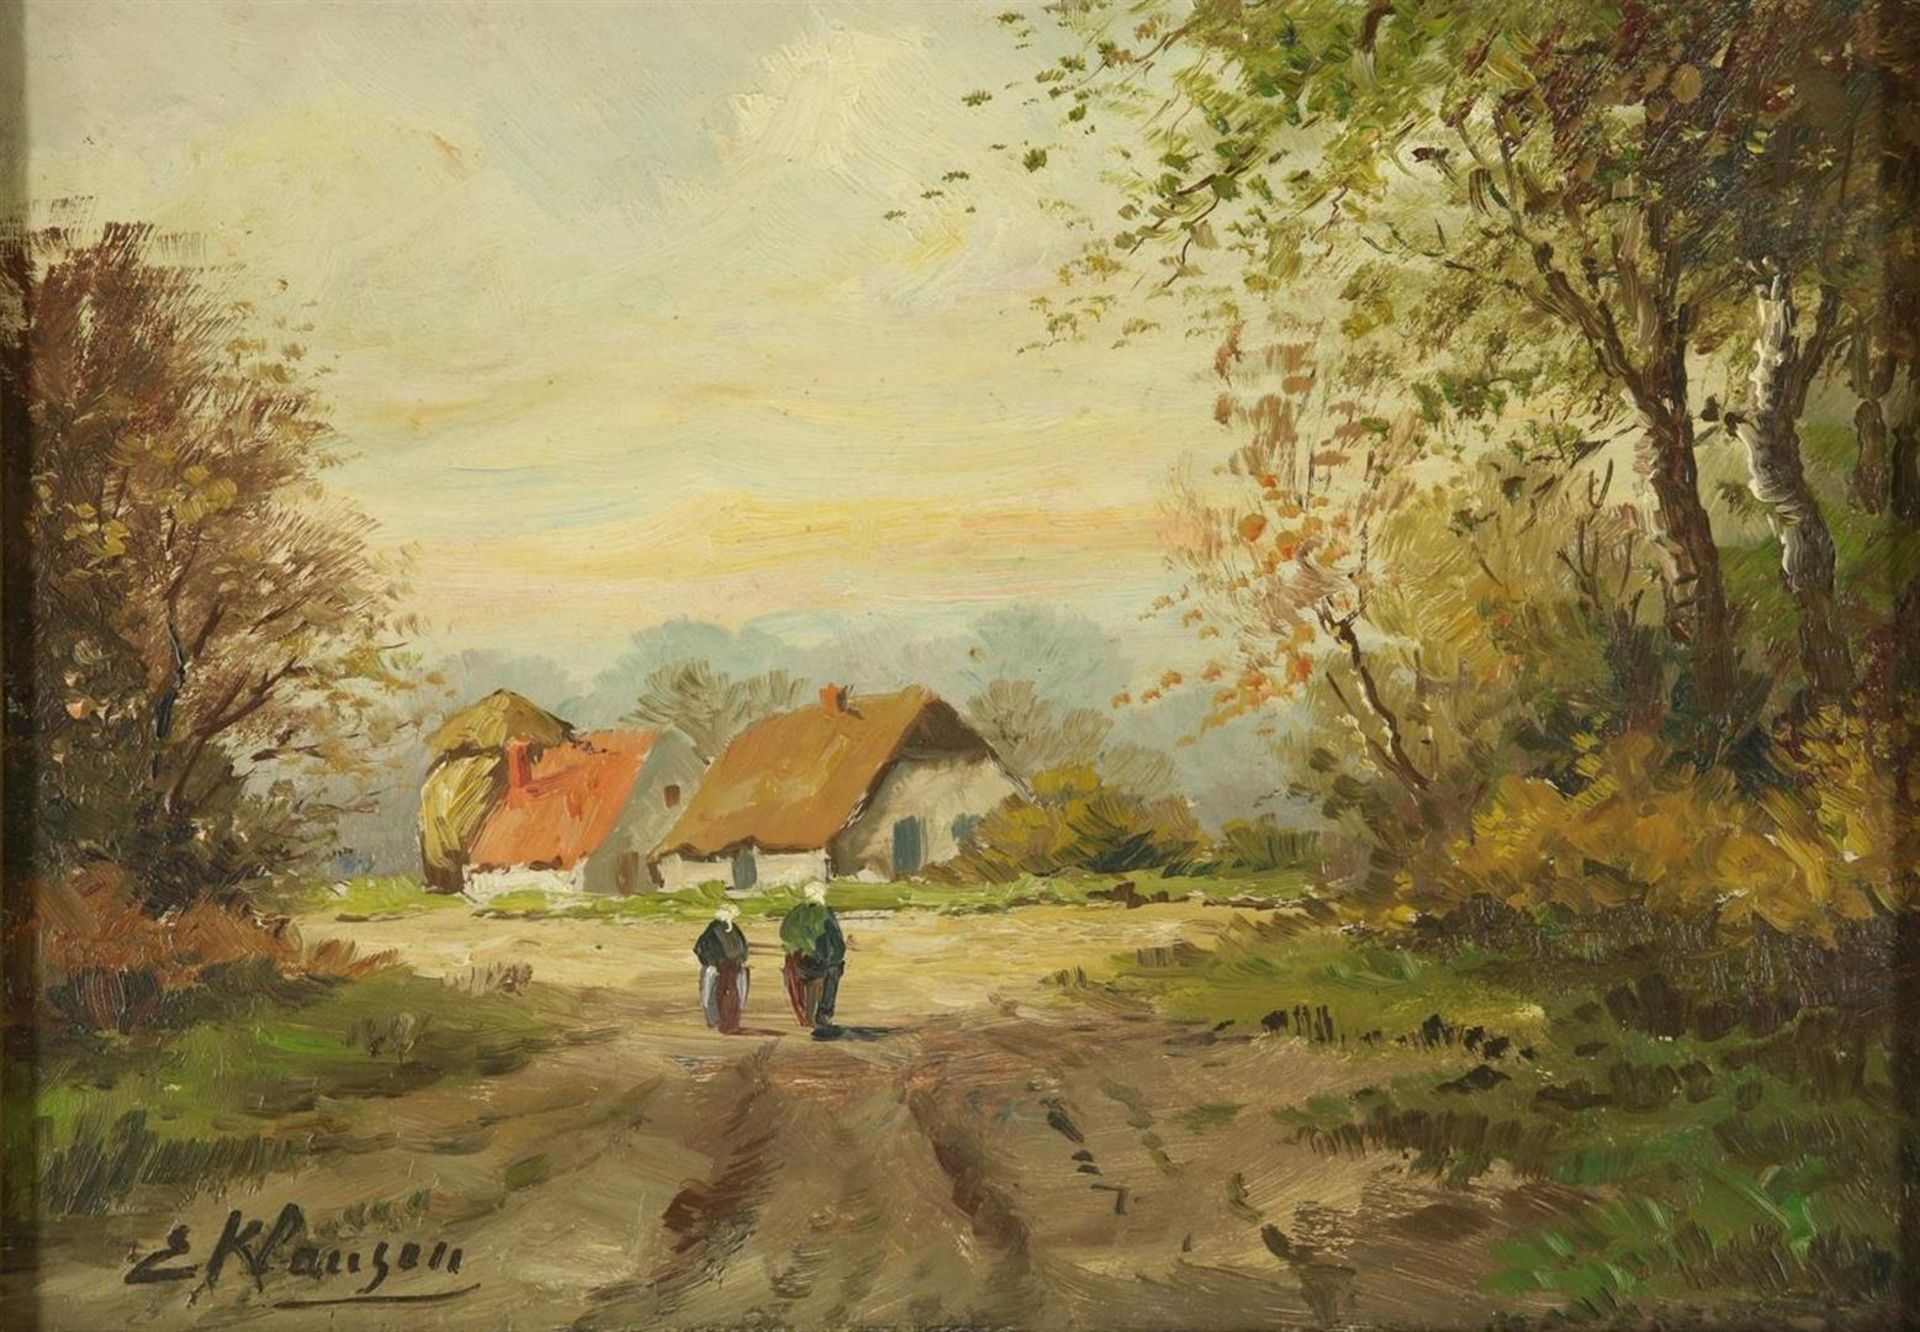  E. Klaassen, Landscape with figures